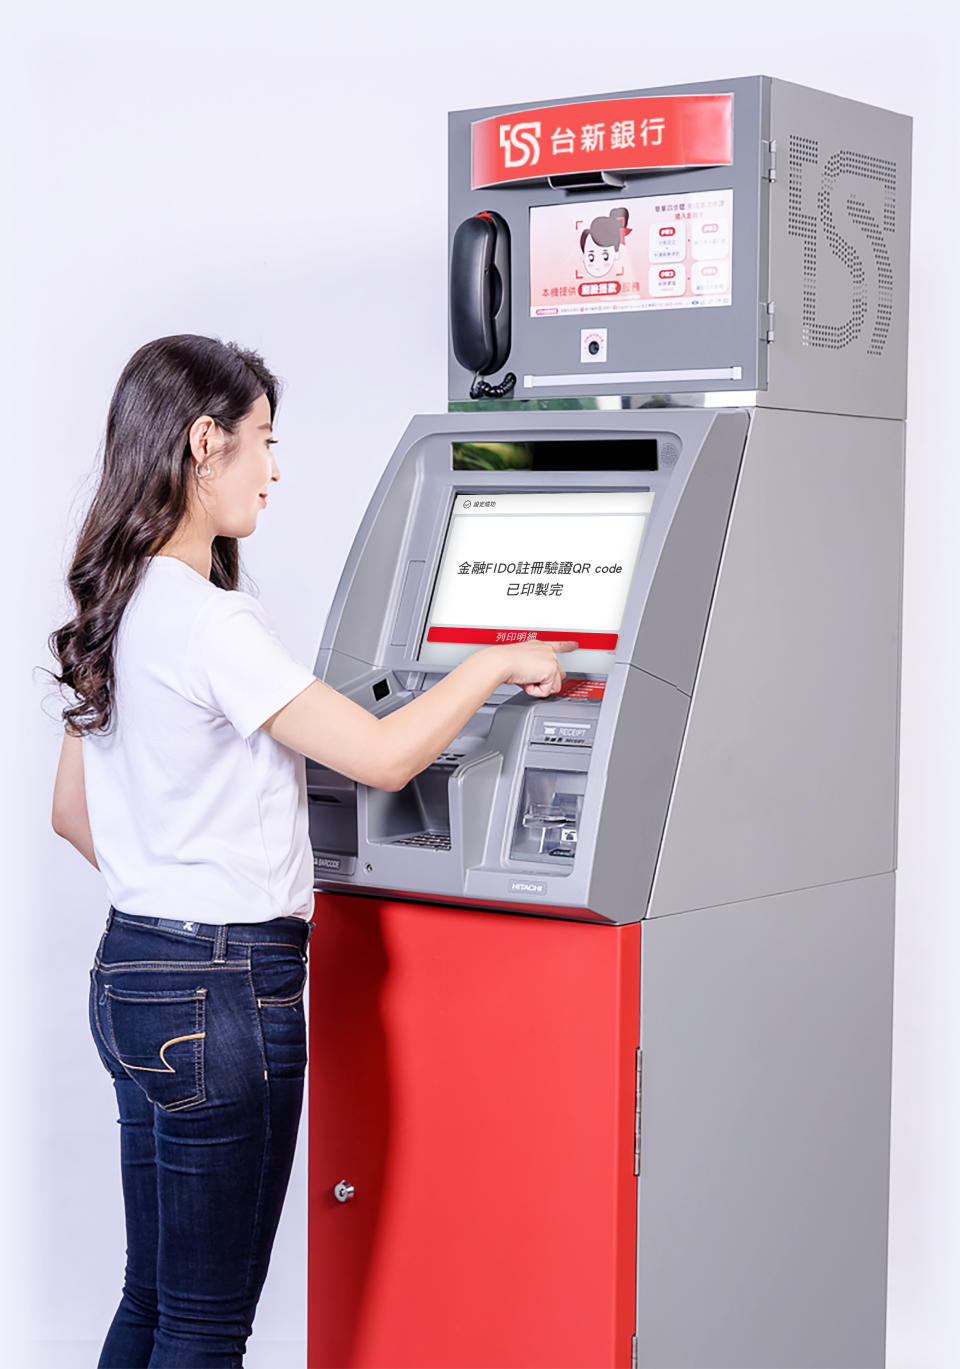 20221028_台新銀響應身分驗證線上化 首波提供金融FIDO ATM註冊服務。圖/台新銀提供